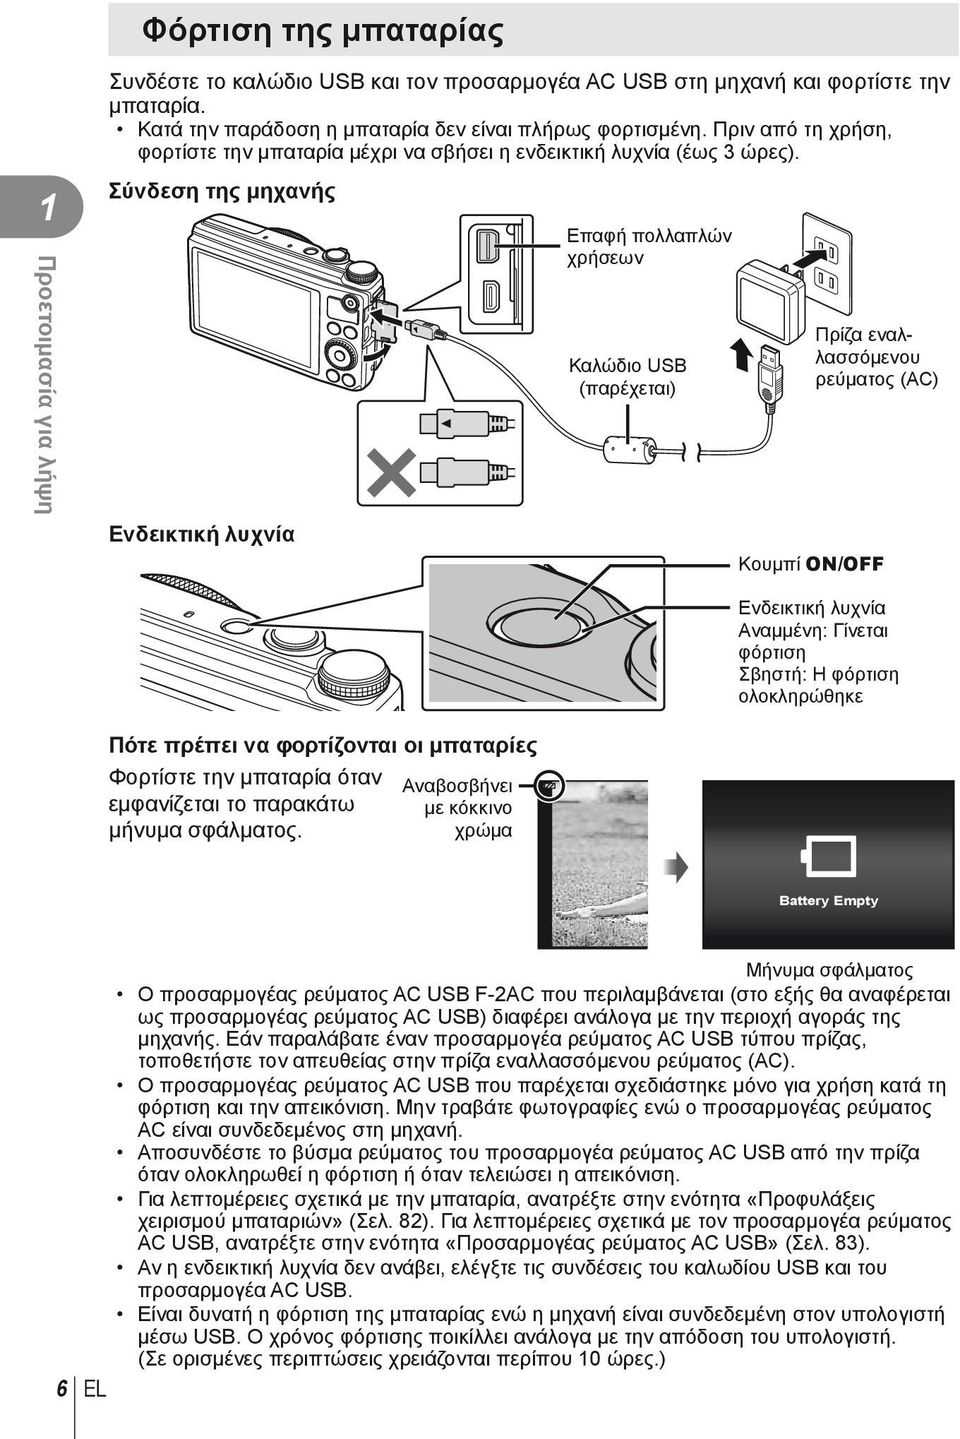 Σύνδεση της μηχανής Ενδεικτική λυχνία Επαφή πολλαπλών χρήσεων Καλώδιο USB (παρέχεται) Πρίζα εναλλασσόμενου ρεύματος (AC) Κουμπί ON/OFF Ενδεικτική λυχνία Αναμμένη: Γίνεται φόρτιση Σβηστή: Η φόρτιση